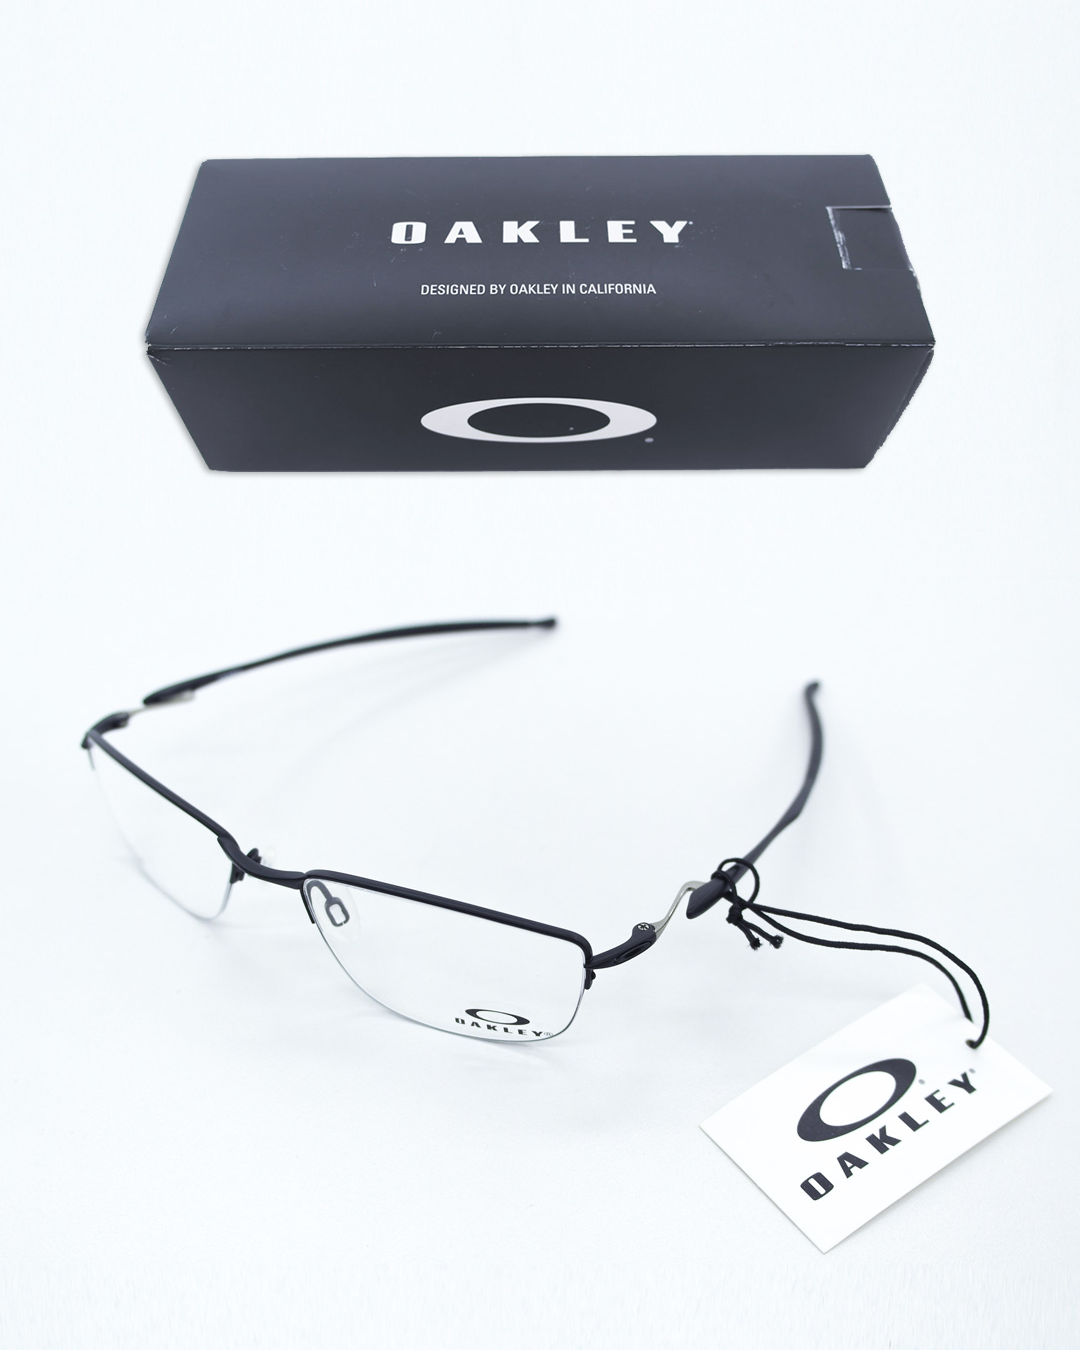 OAKLEY matte basic glasses